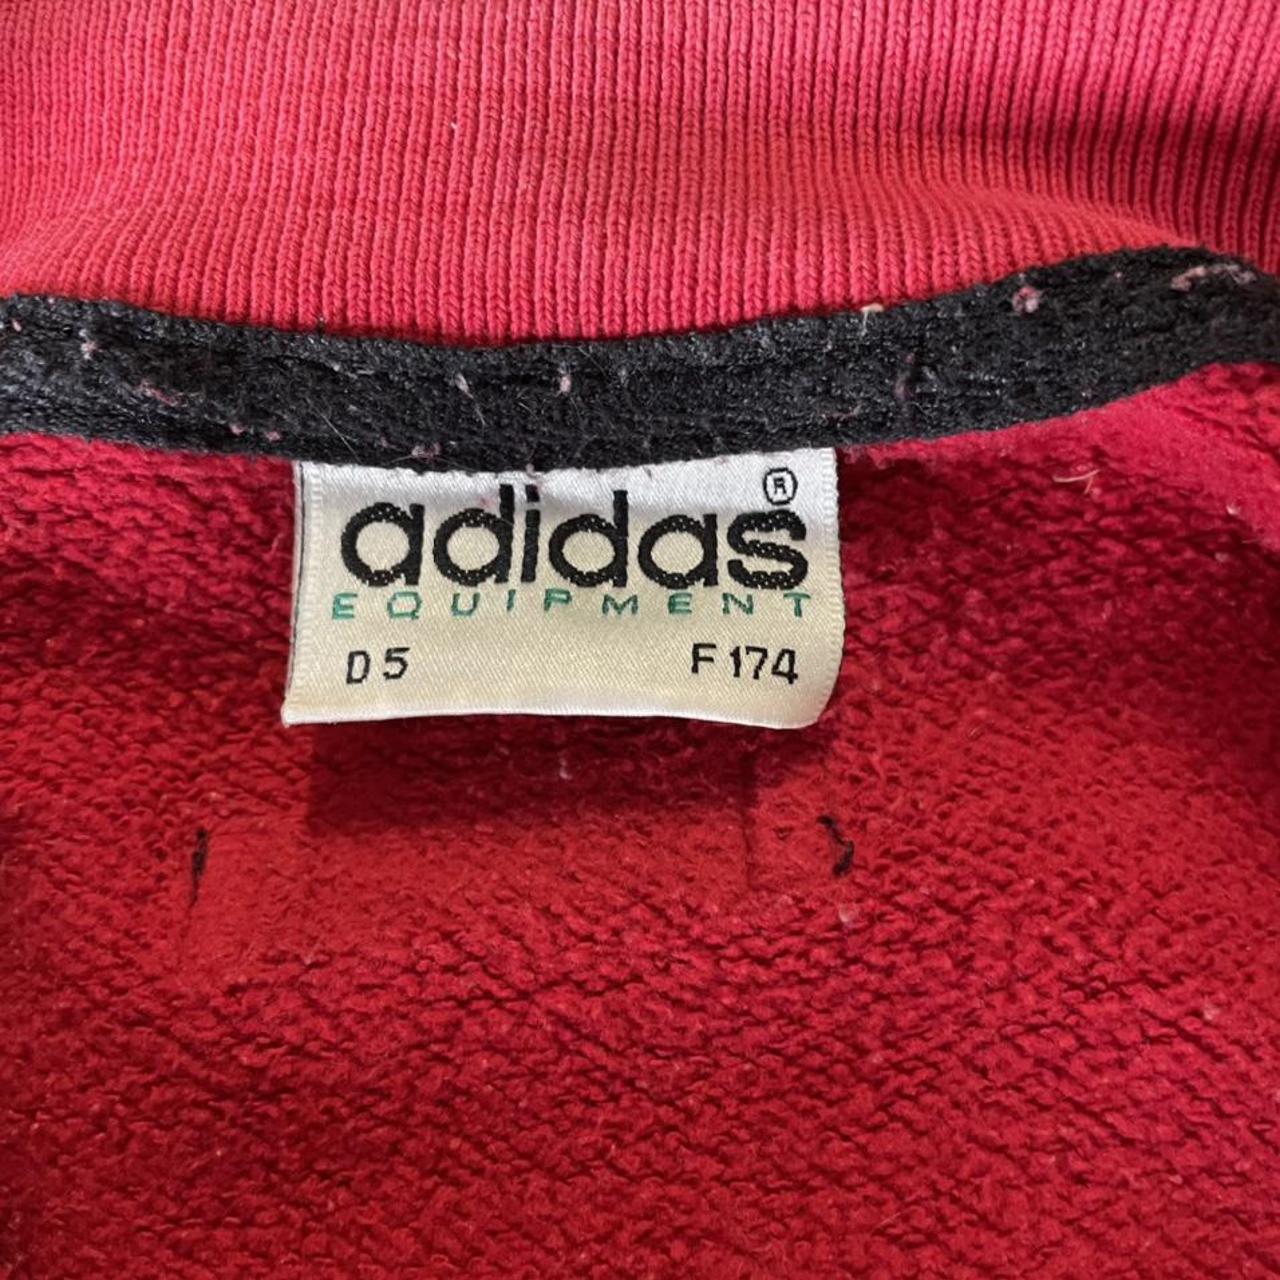 Vintage Adidas Equipment 1/4 Zip Sweater in... - Depop